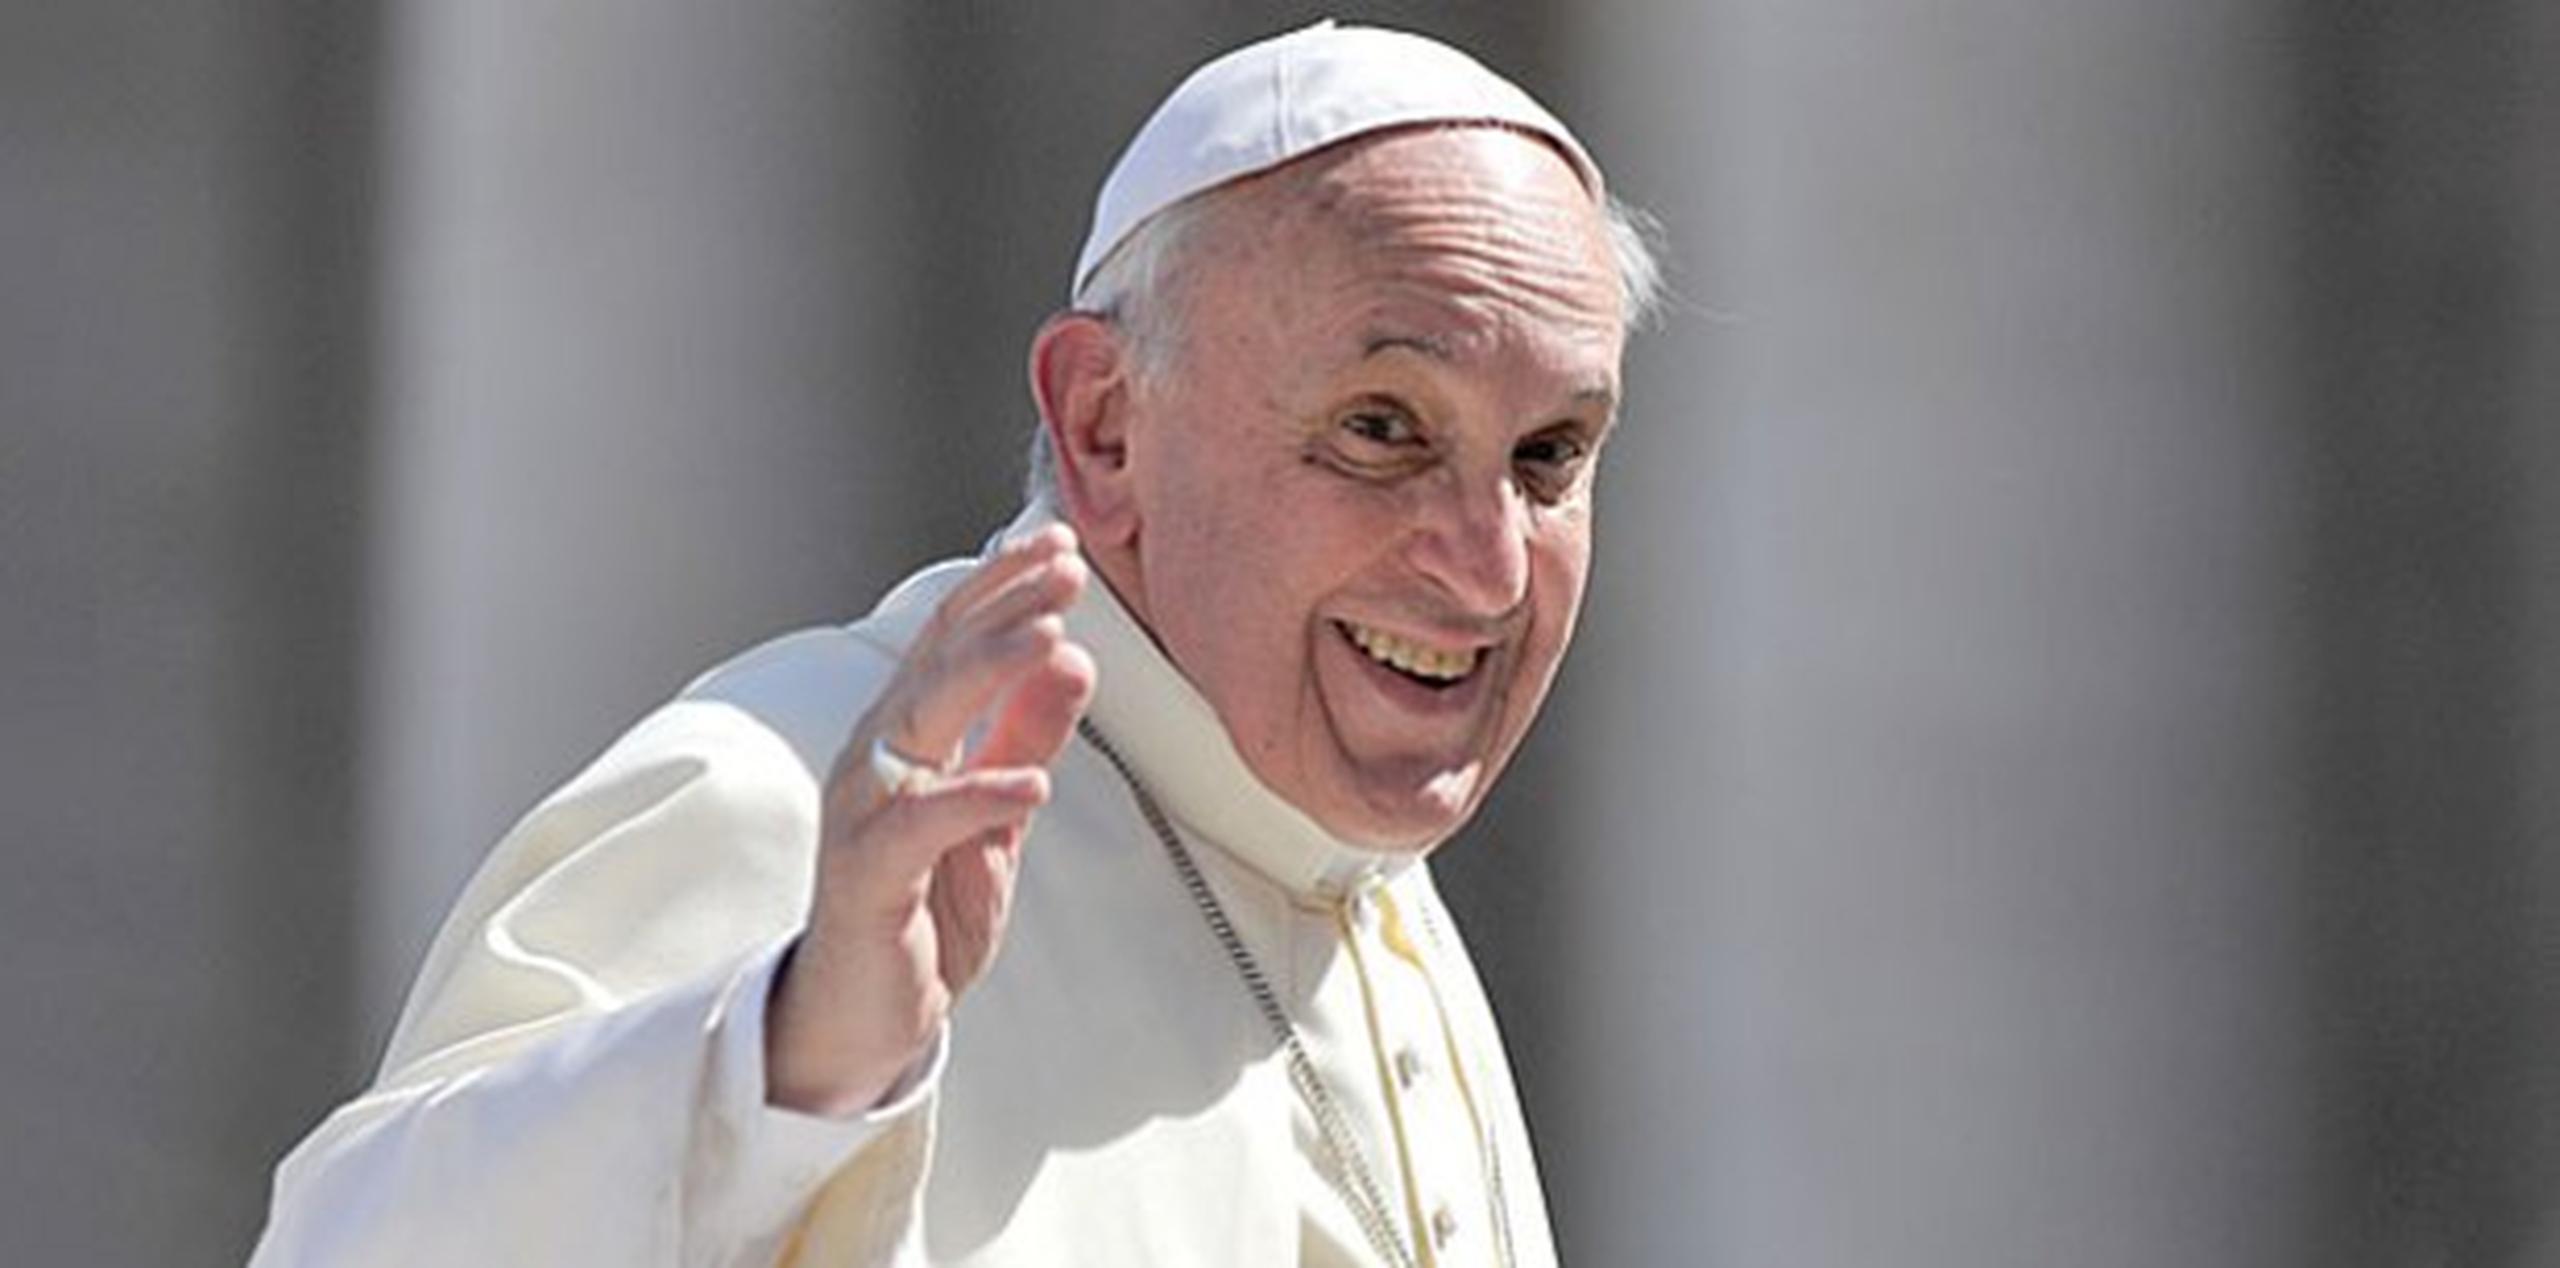 El papa francisco visitará Estados Unidos la semana entrante. (AFP)